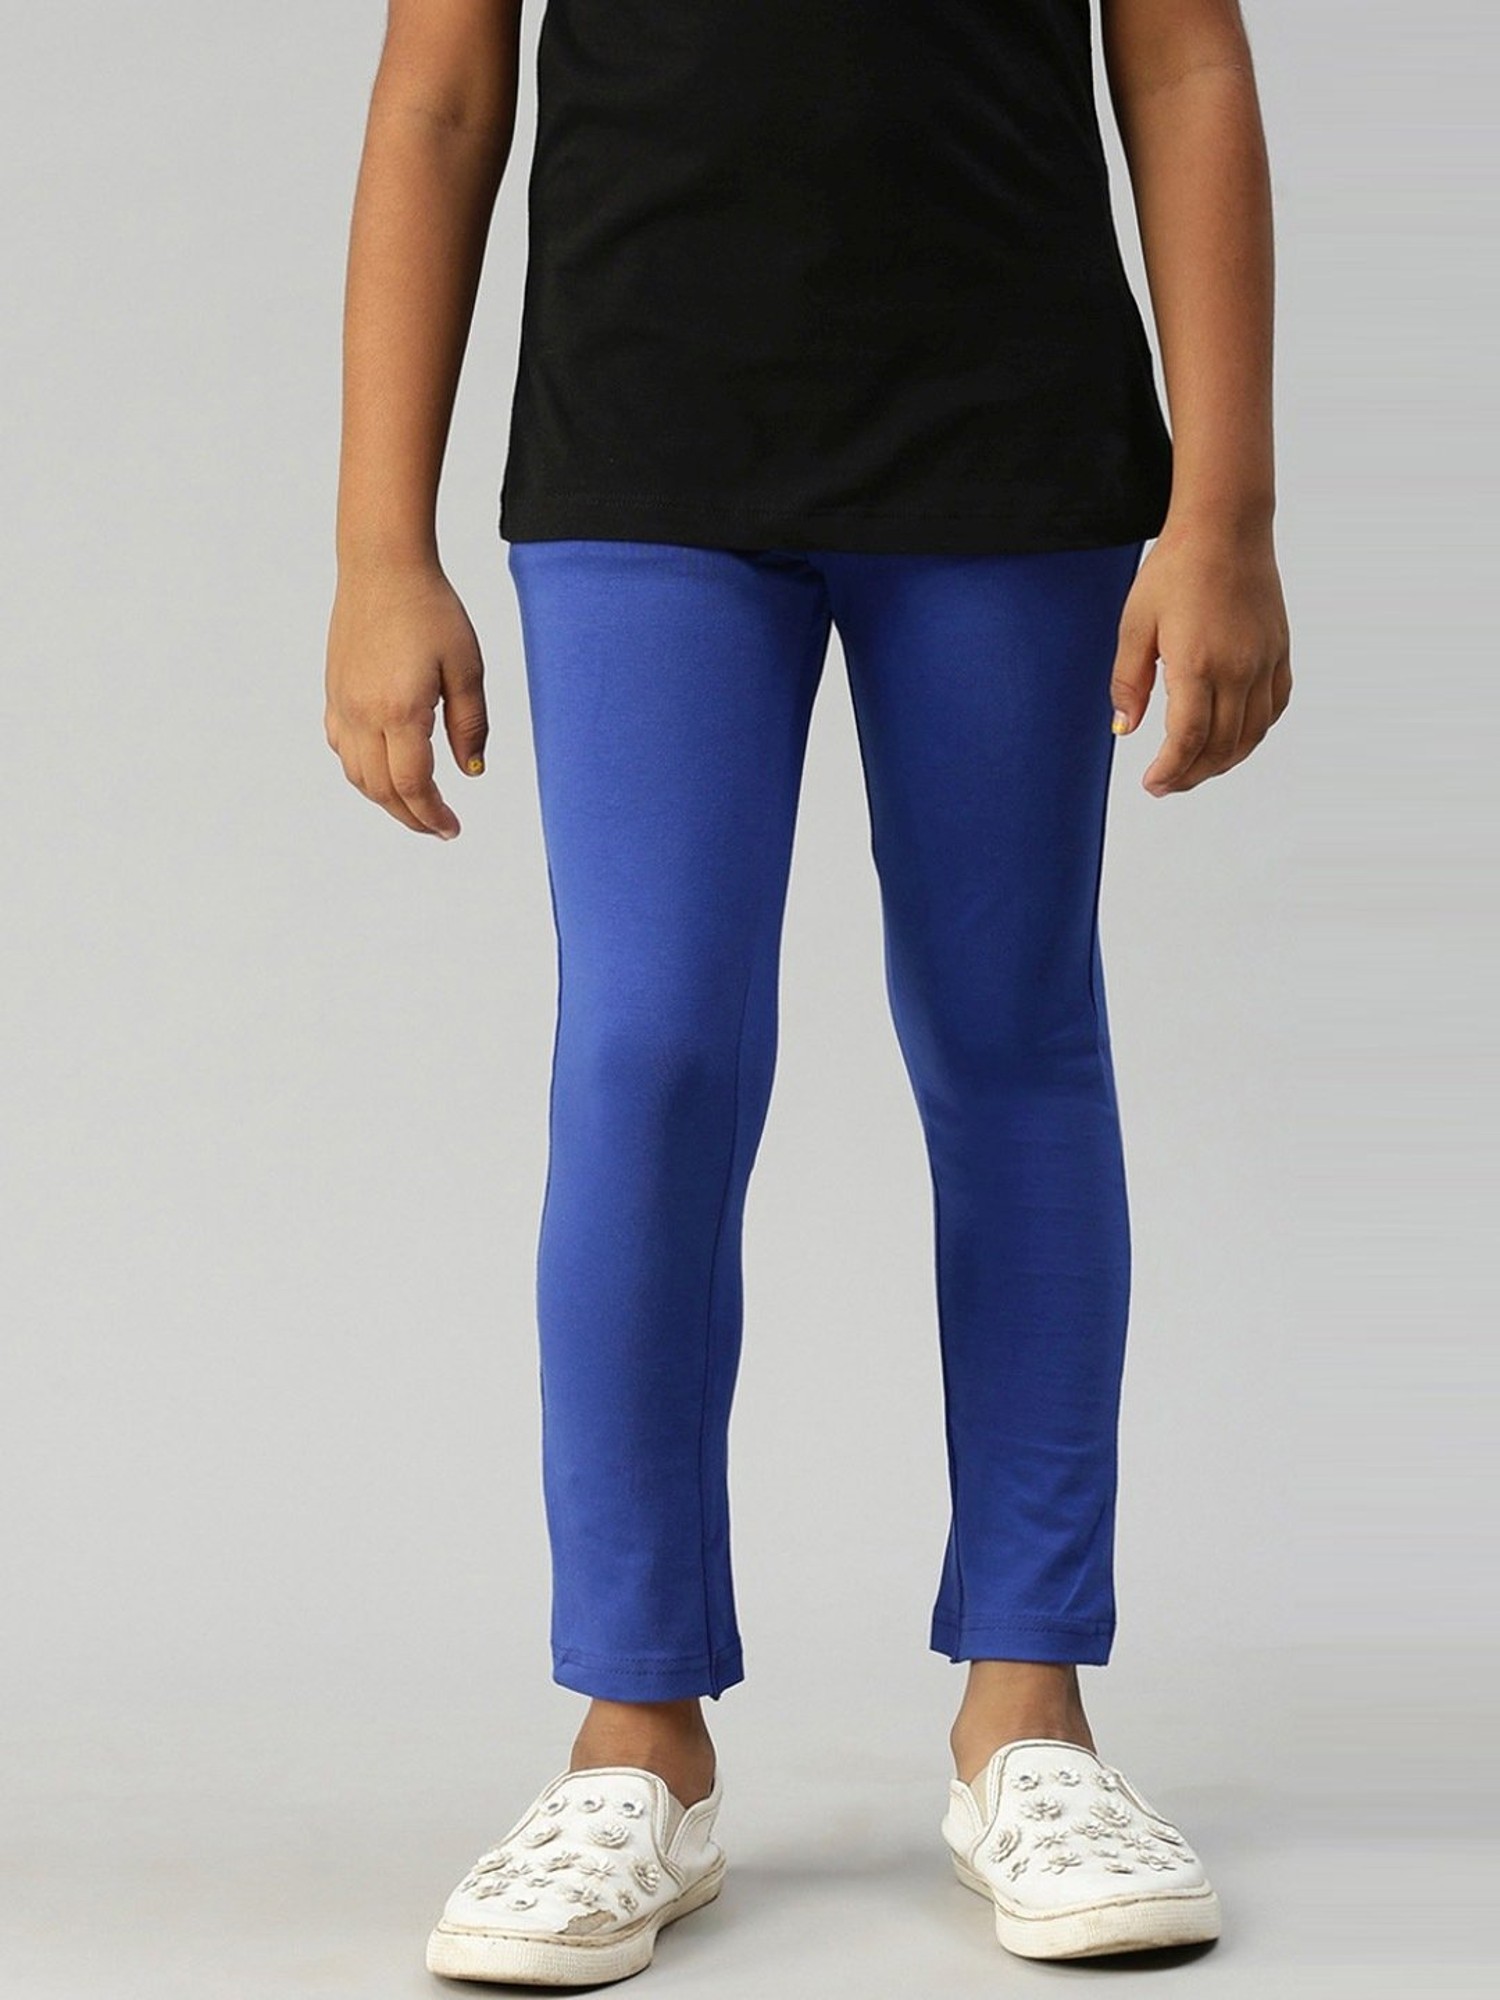 Buy Kryptic Kids Blue Leggings for Girls Clothing Online @ Tata CLiQ